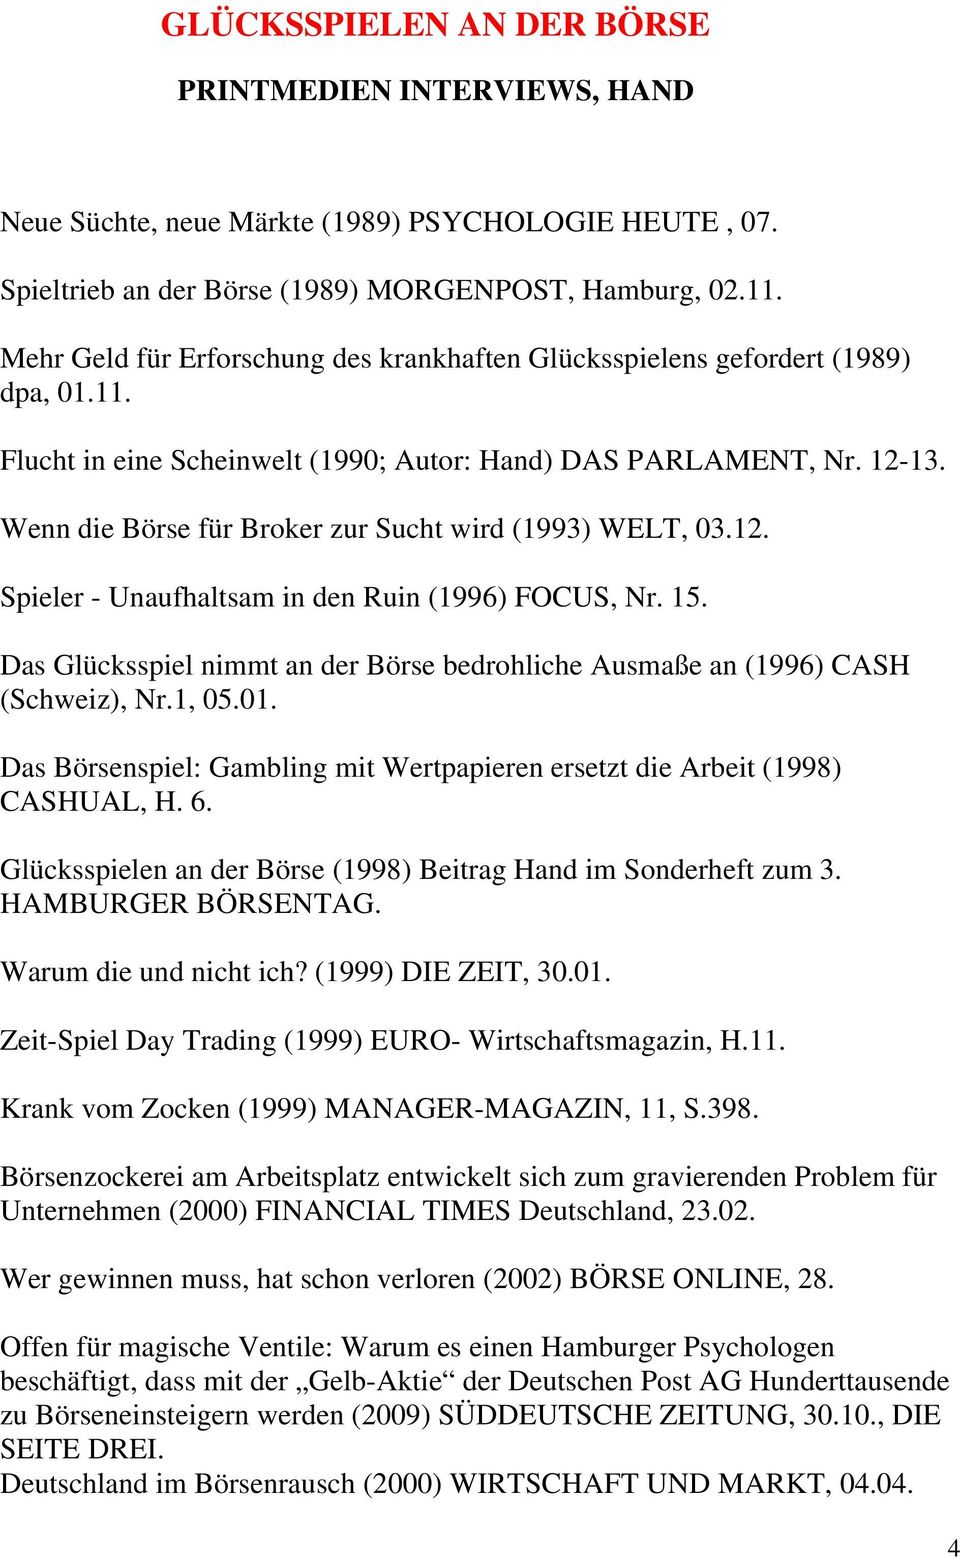 Wenn die Börse für Broker zur Sucht wird (1993) WELT, 03.12. Spieler - Unaufhaltsam in den Ruin (1996) FOCUS, Nr. 15.